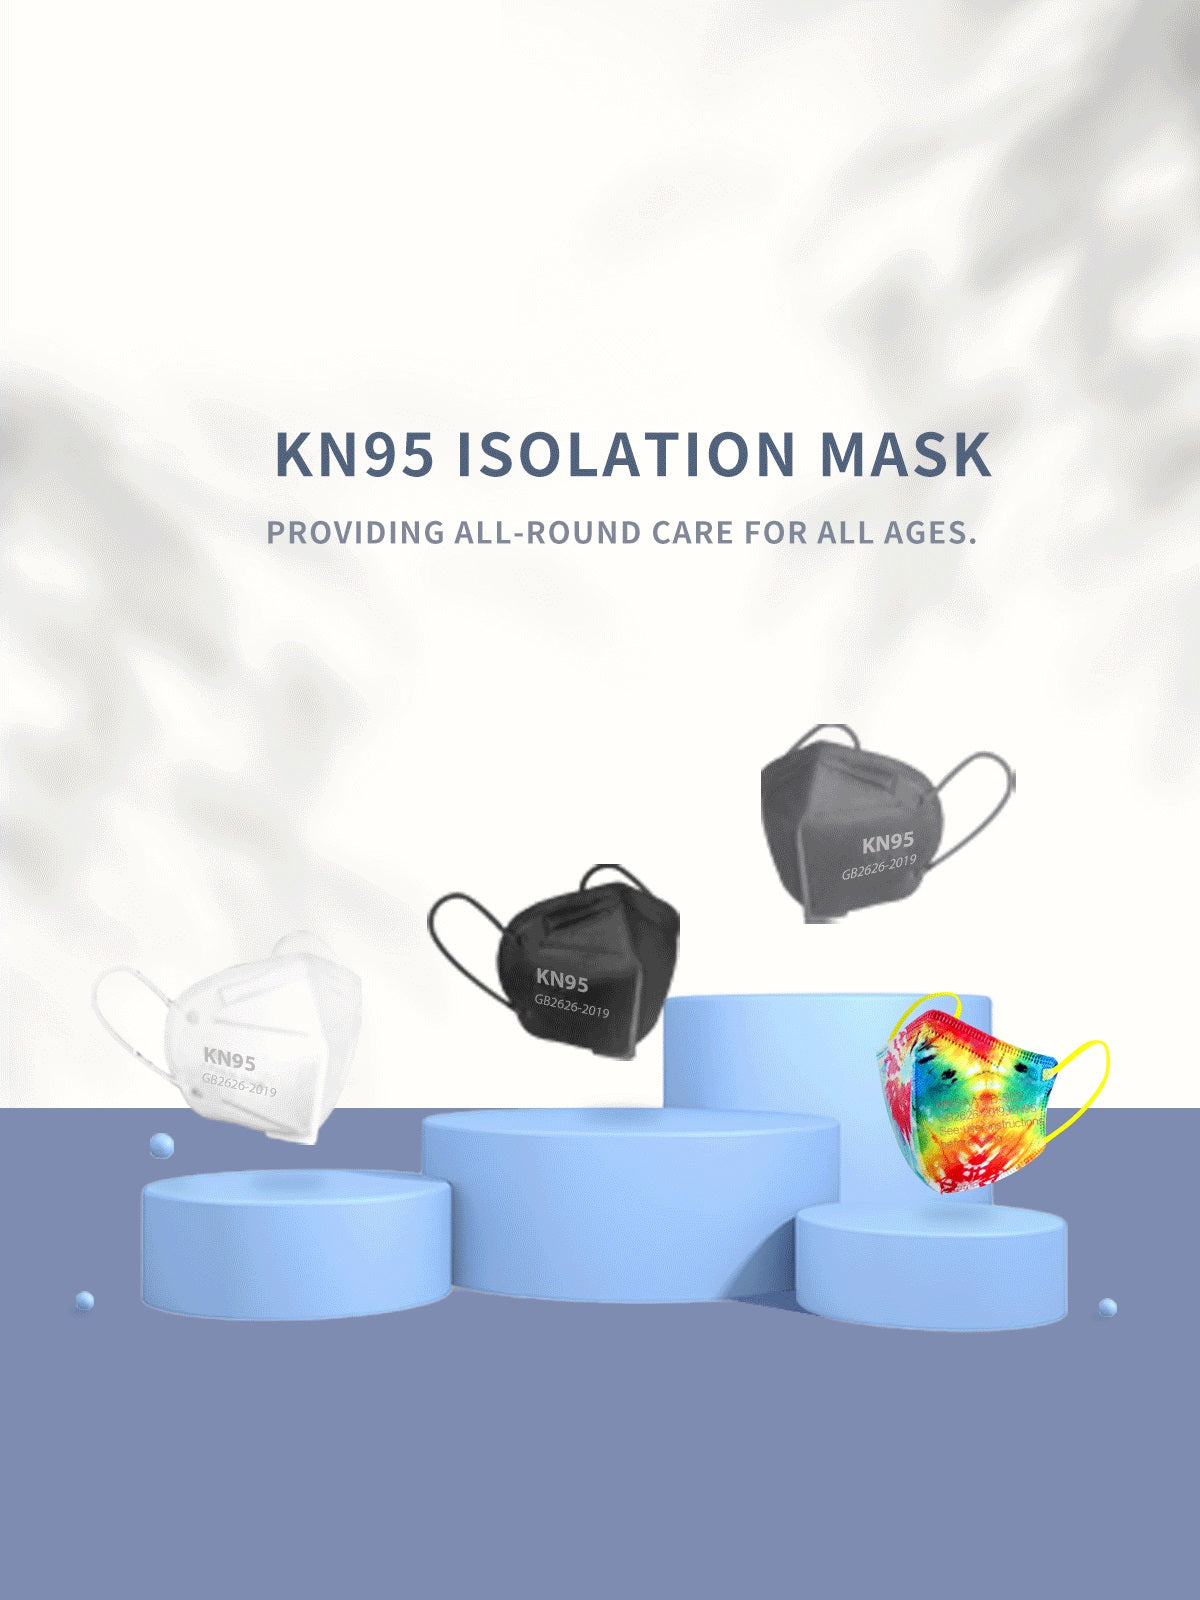 kn95 isolation mask